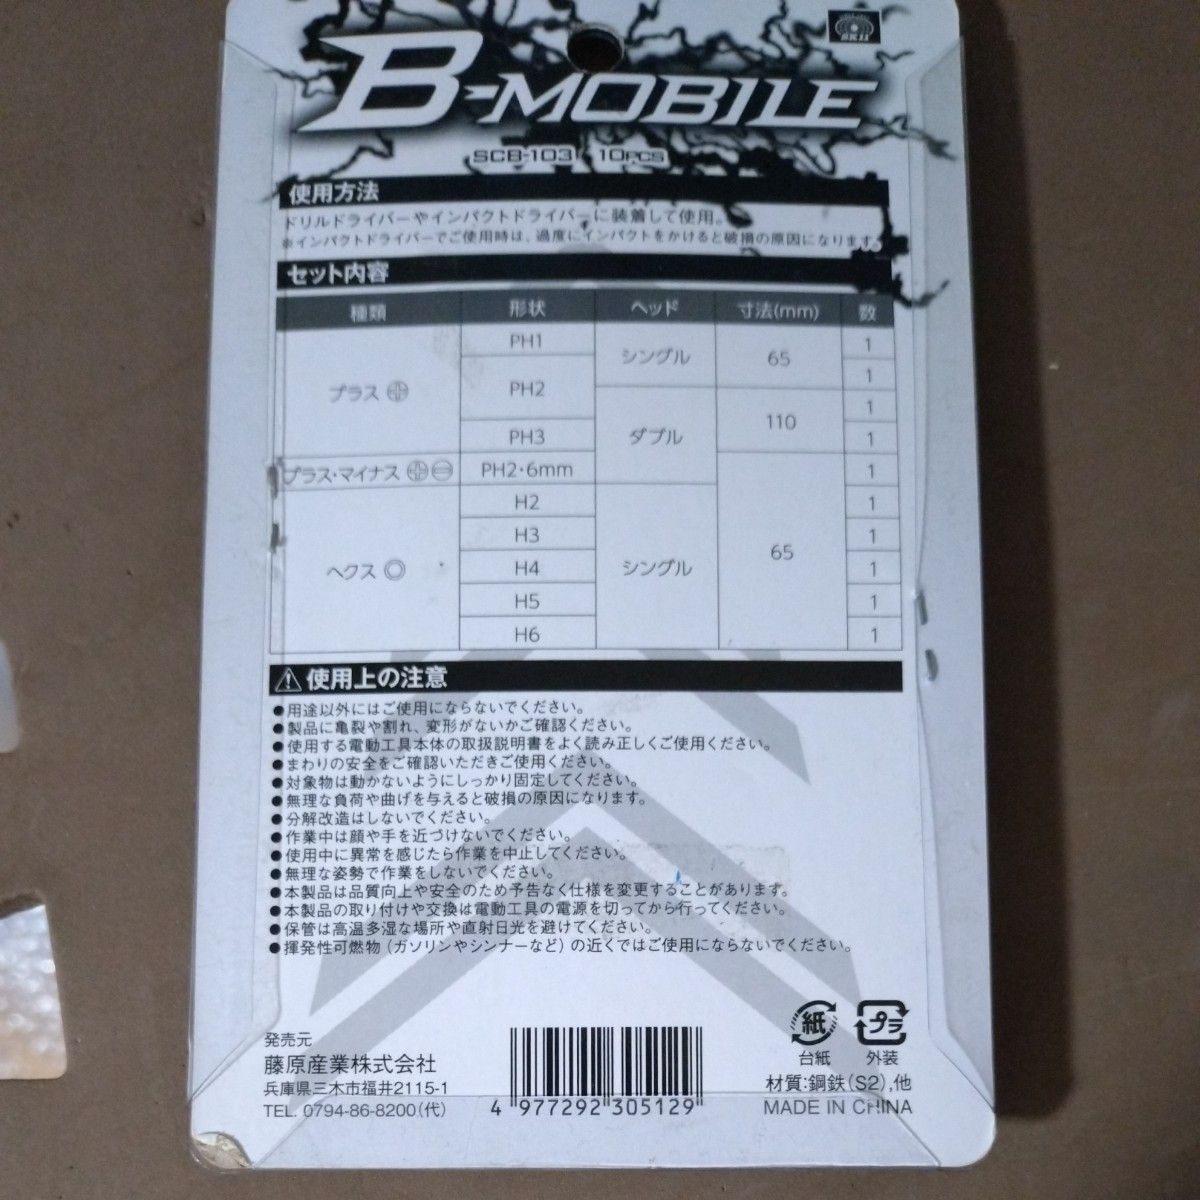 藤原産業 B-Mビットセット 10Pcs プラスHEX SCB-103 (67-4550-98)